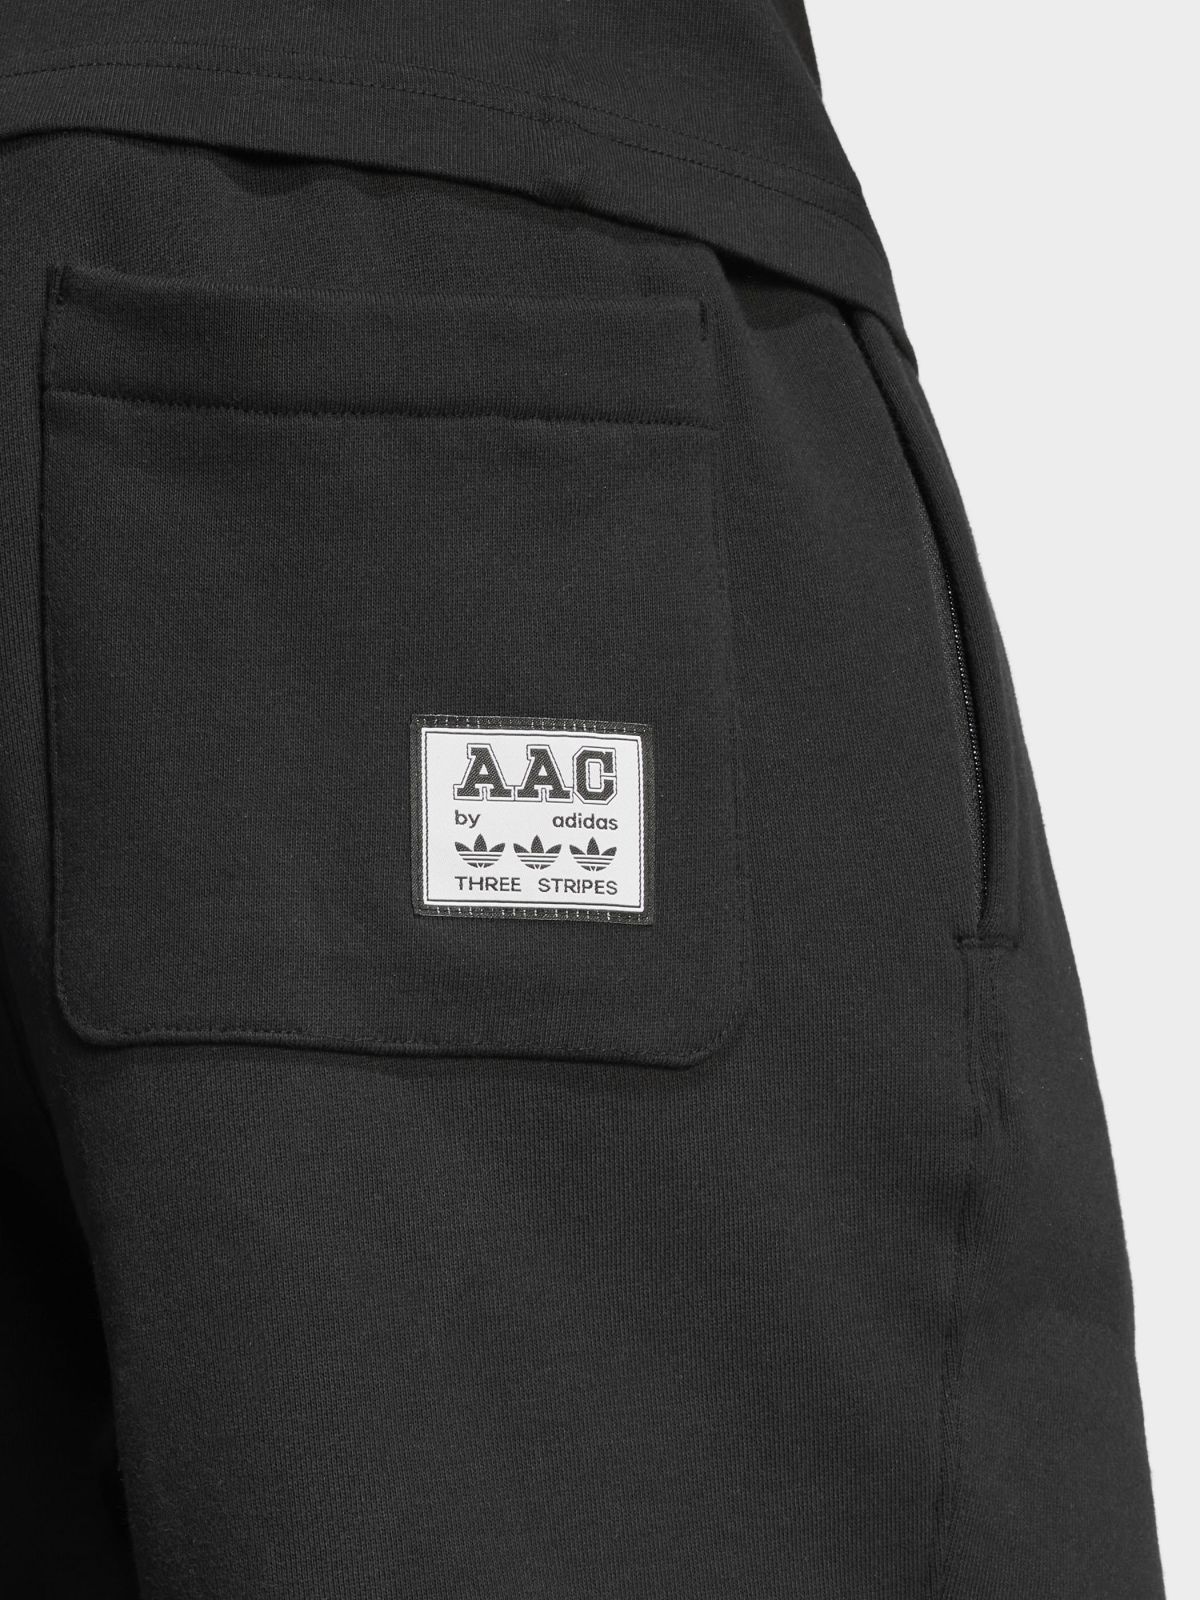  מכנסיים קצרים RIFTA Metro AAC של ADIDAS Originals